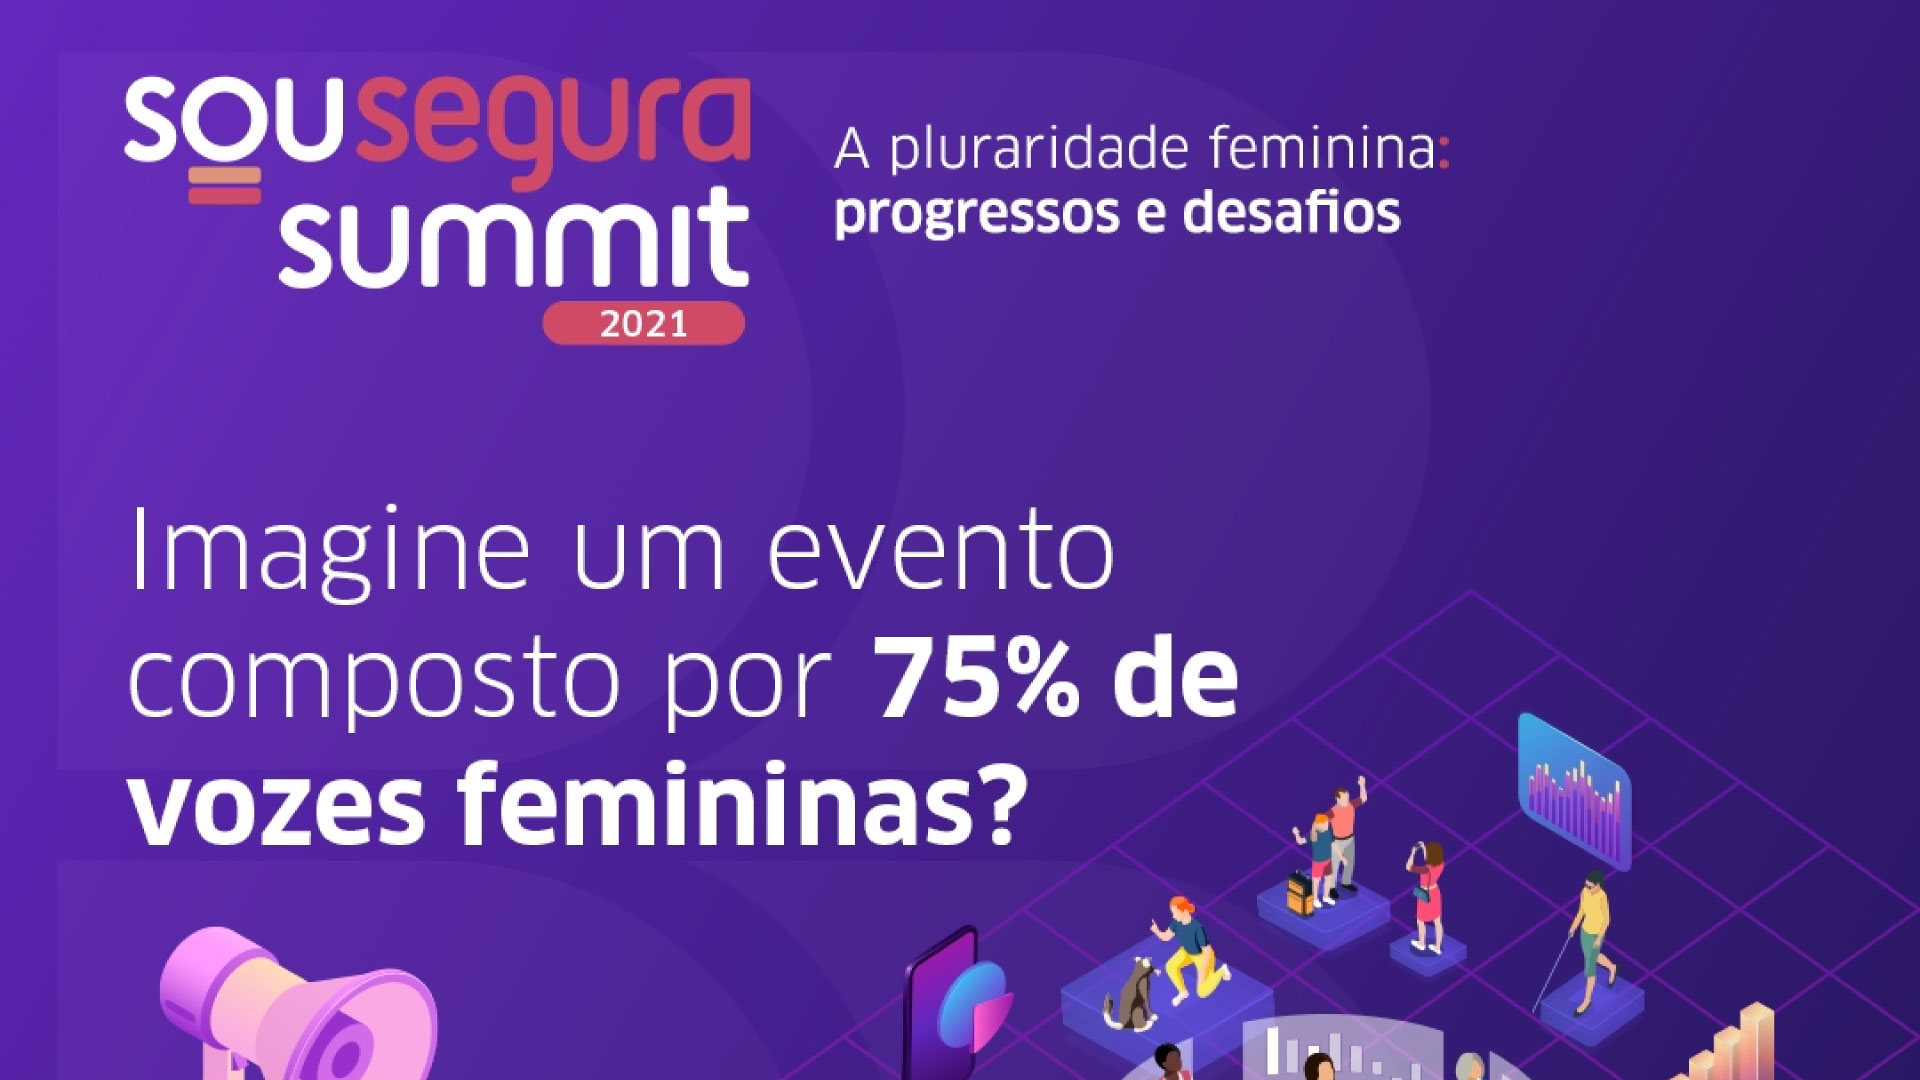 Sou Segura Summit aborda progressos e desafios da pluralidade feminina / Divulgação